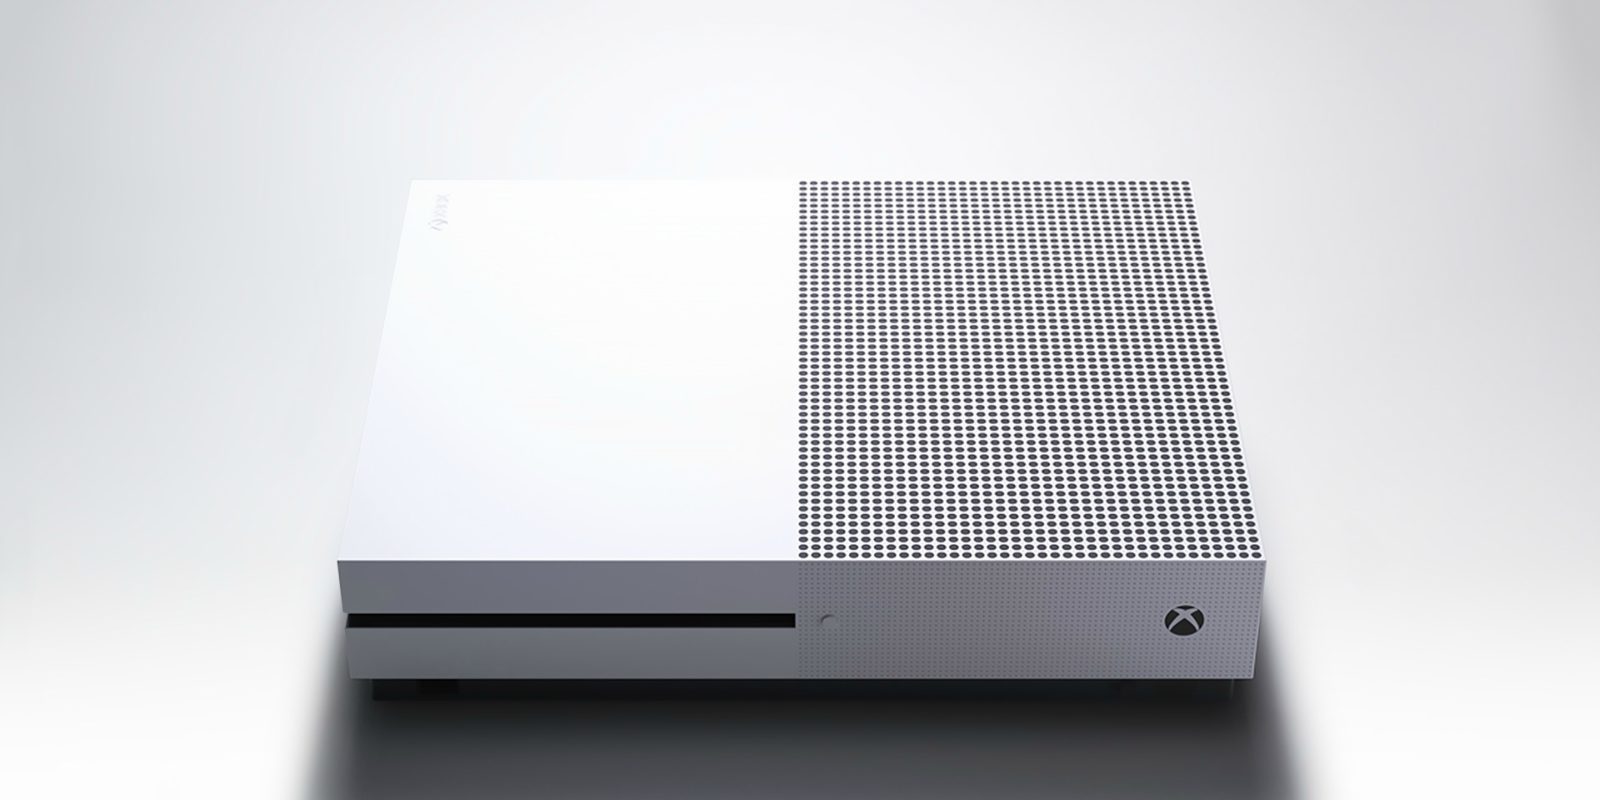 Los packs de Xbox One S de 1 TB con un juego bajan de precio